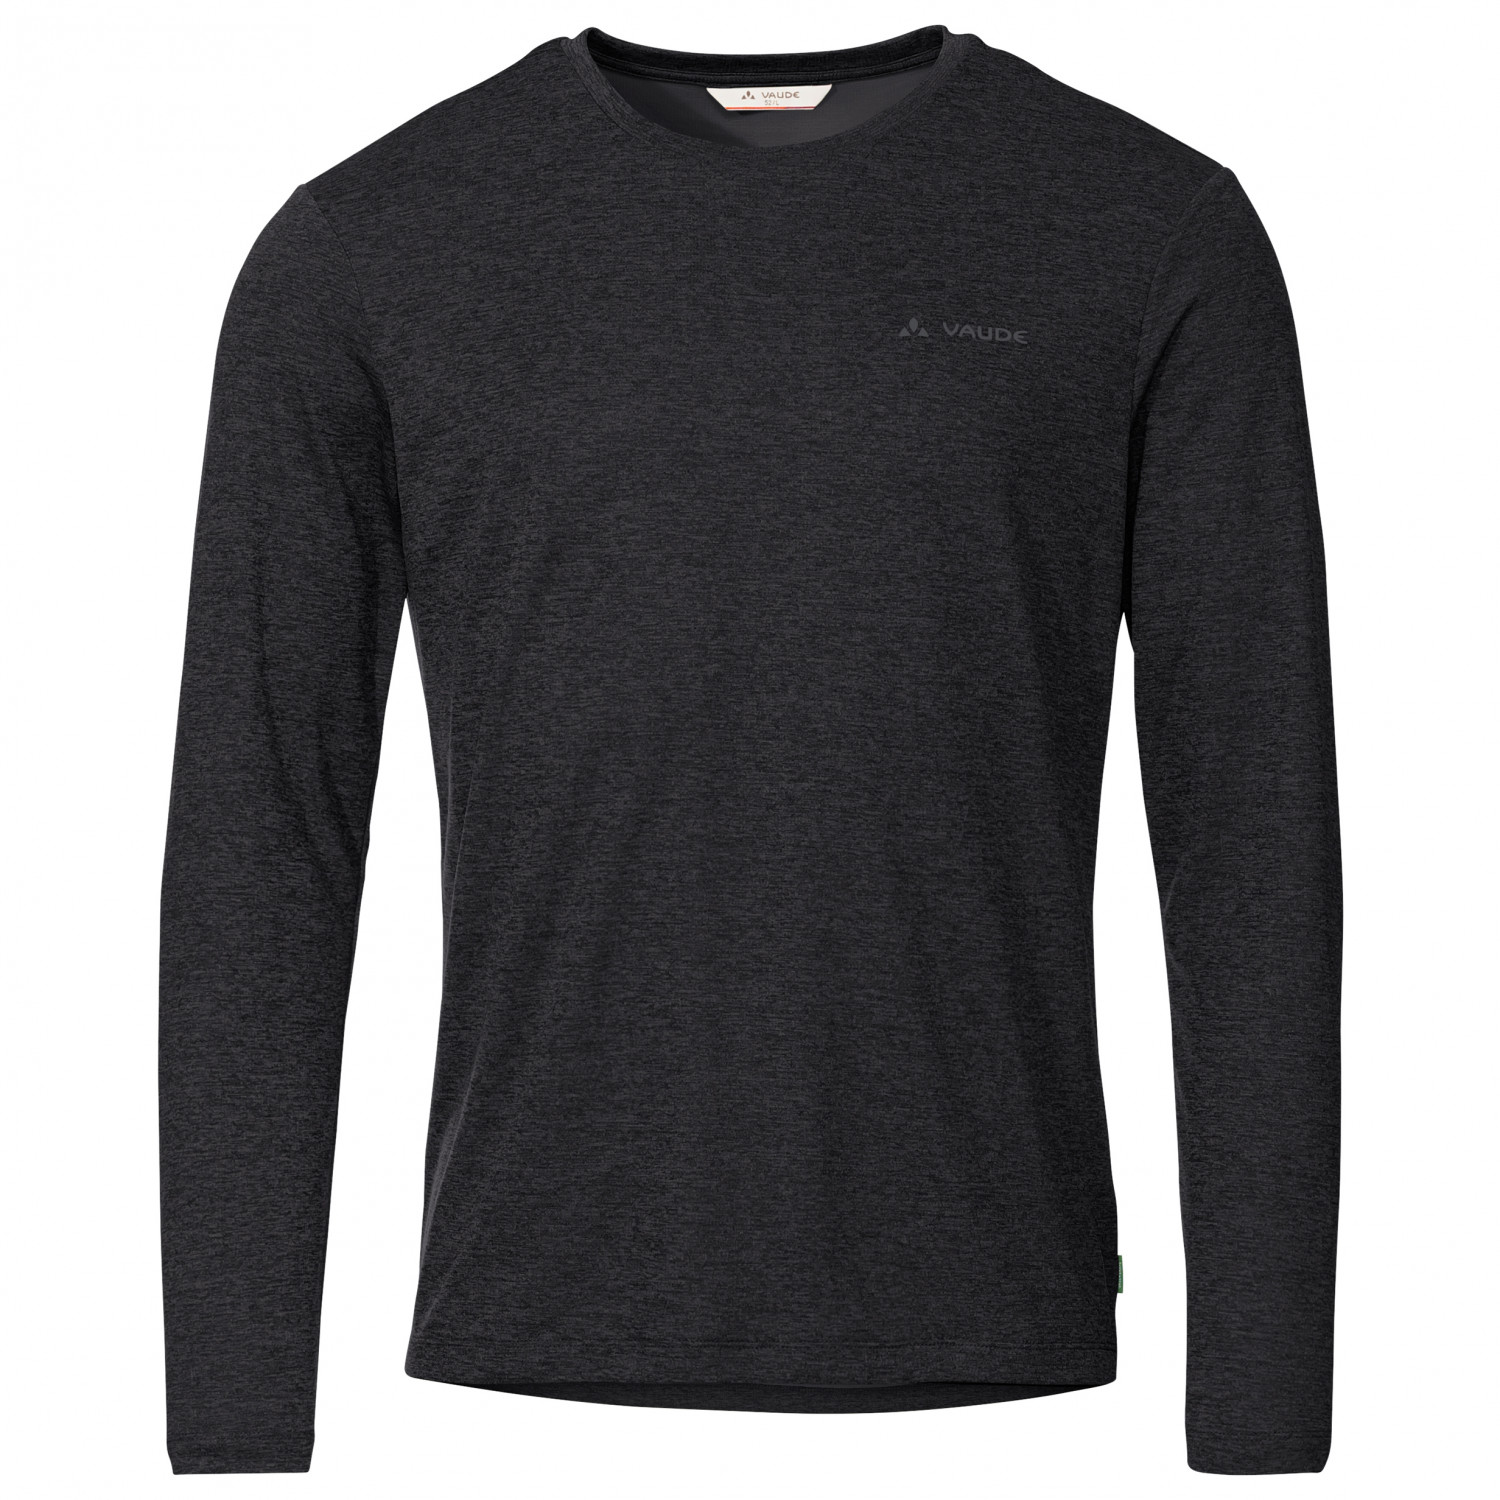 Функциональная рубашка Vaude Essential L/S T Shirt, черный harajuku streetwear shirt menheather gray 50 50 tee t shirt sz mens l surf surfer